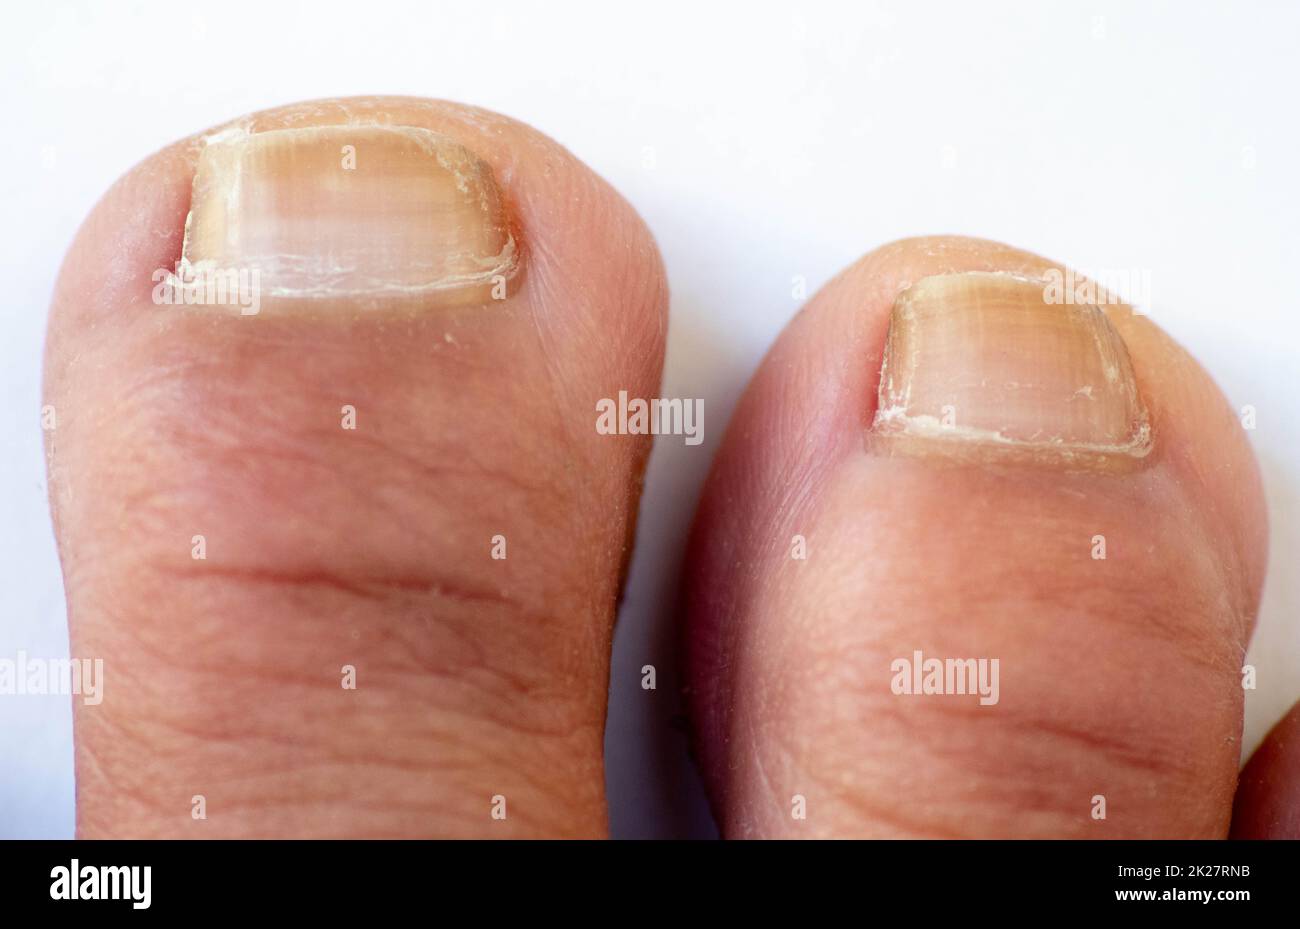 Dedos de los pies, manos y uñas. Partes masculinas del cuerpo humano de 20 a 30 años de edad Foto de stock